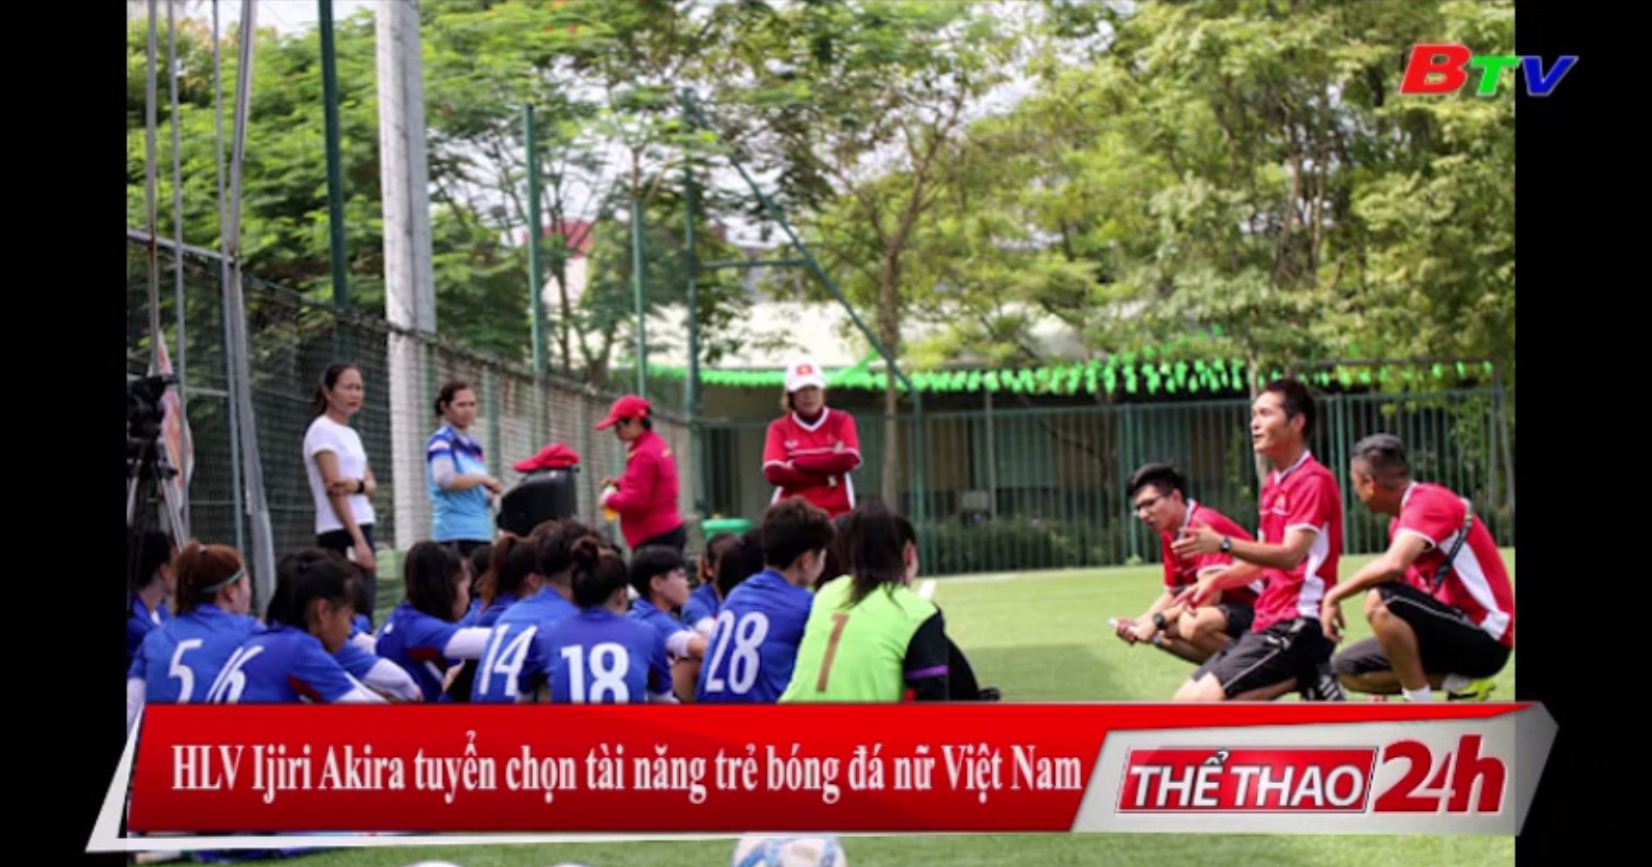 HLV Ijiri Akira tuyển chọn tài năng trẻ bóng đá nữ Việt Nam